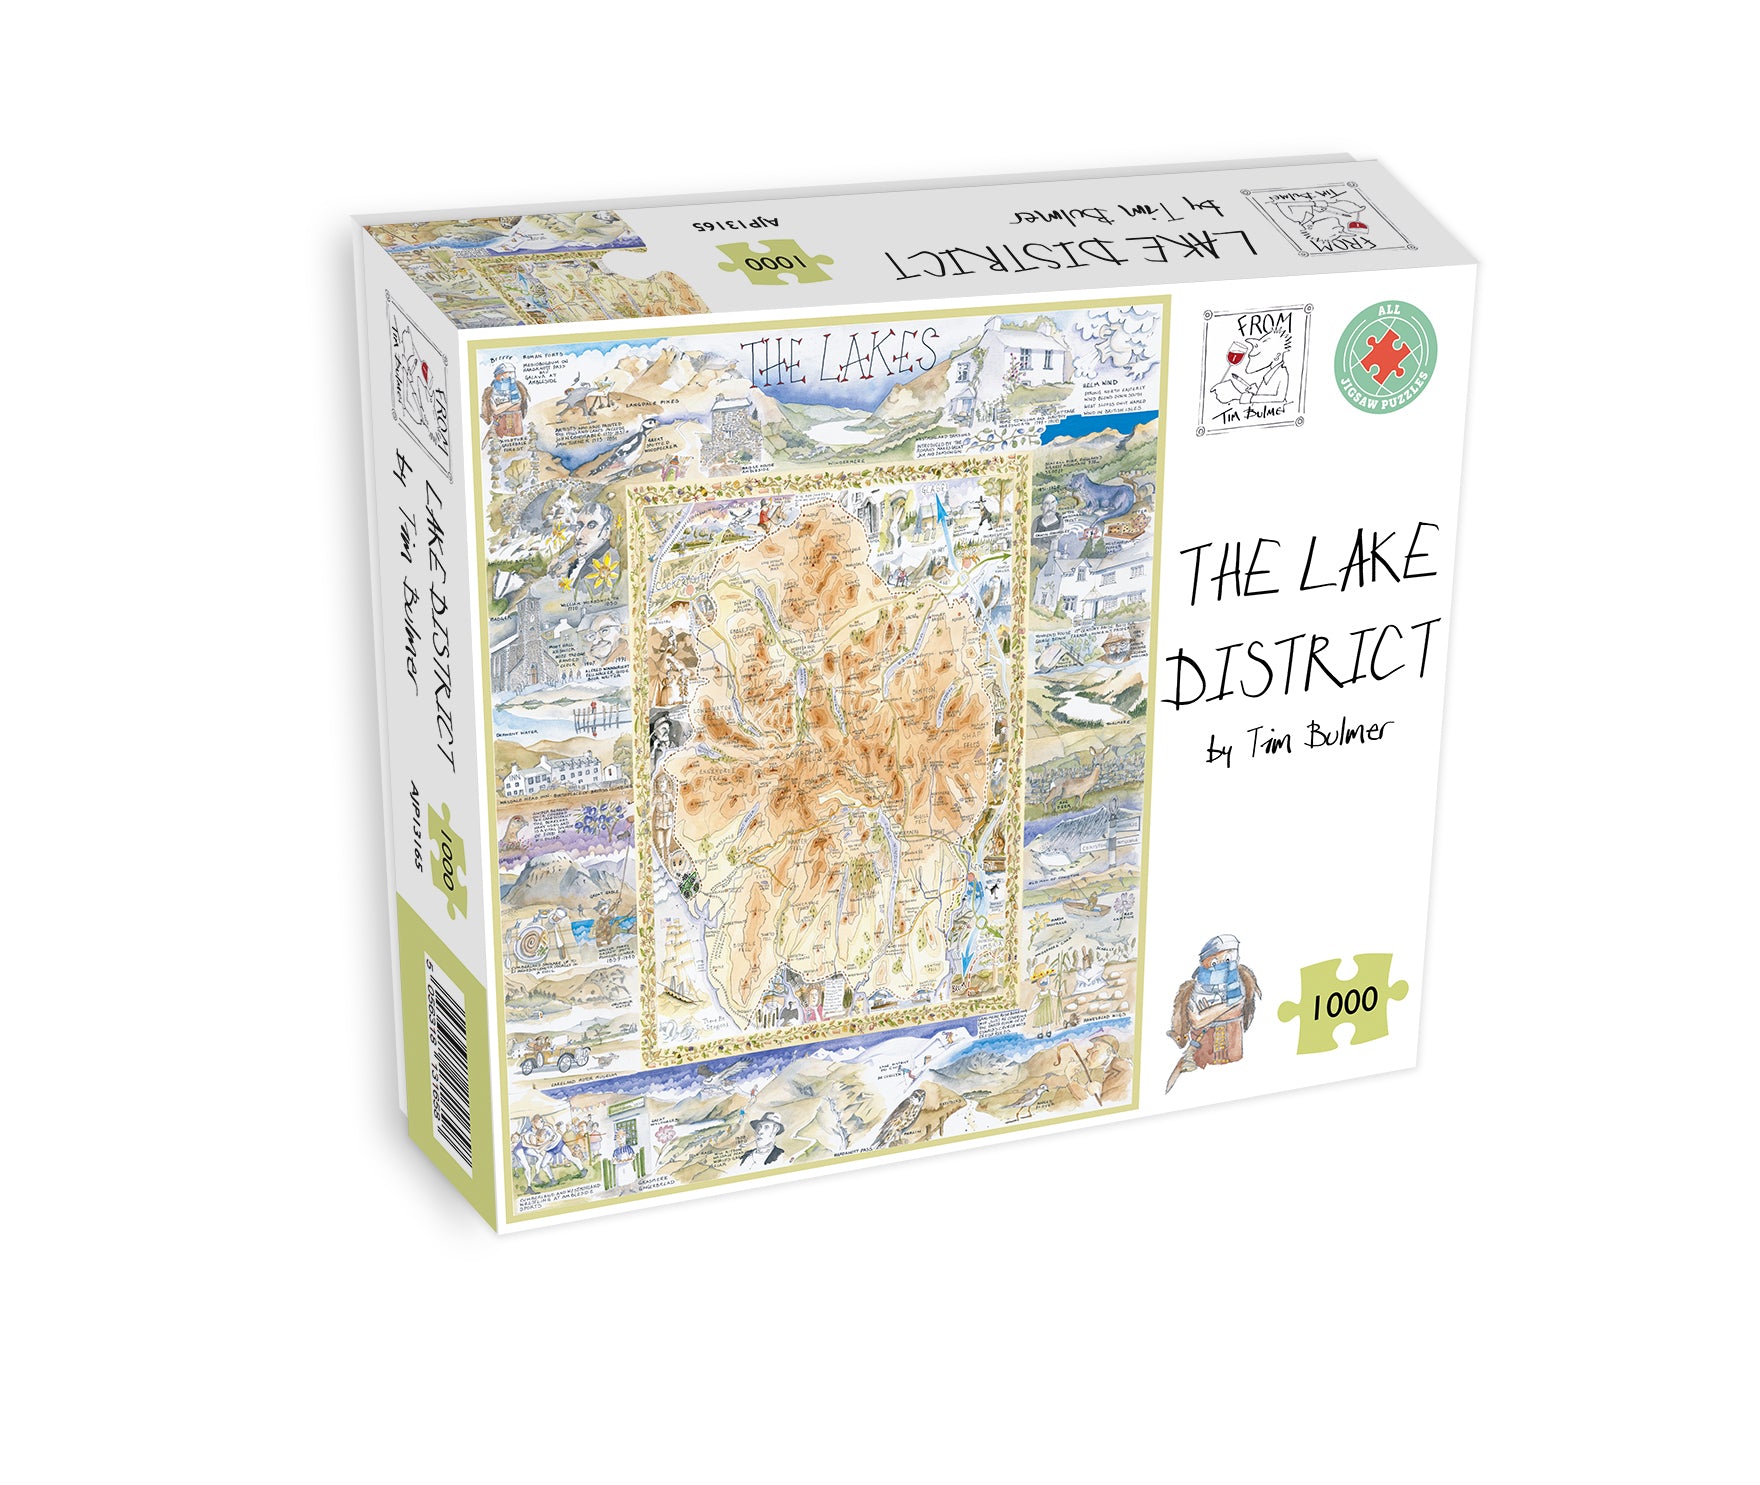 Lake District - Tim Bulmer 1000 Piece Jigsaw Puzzle box